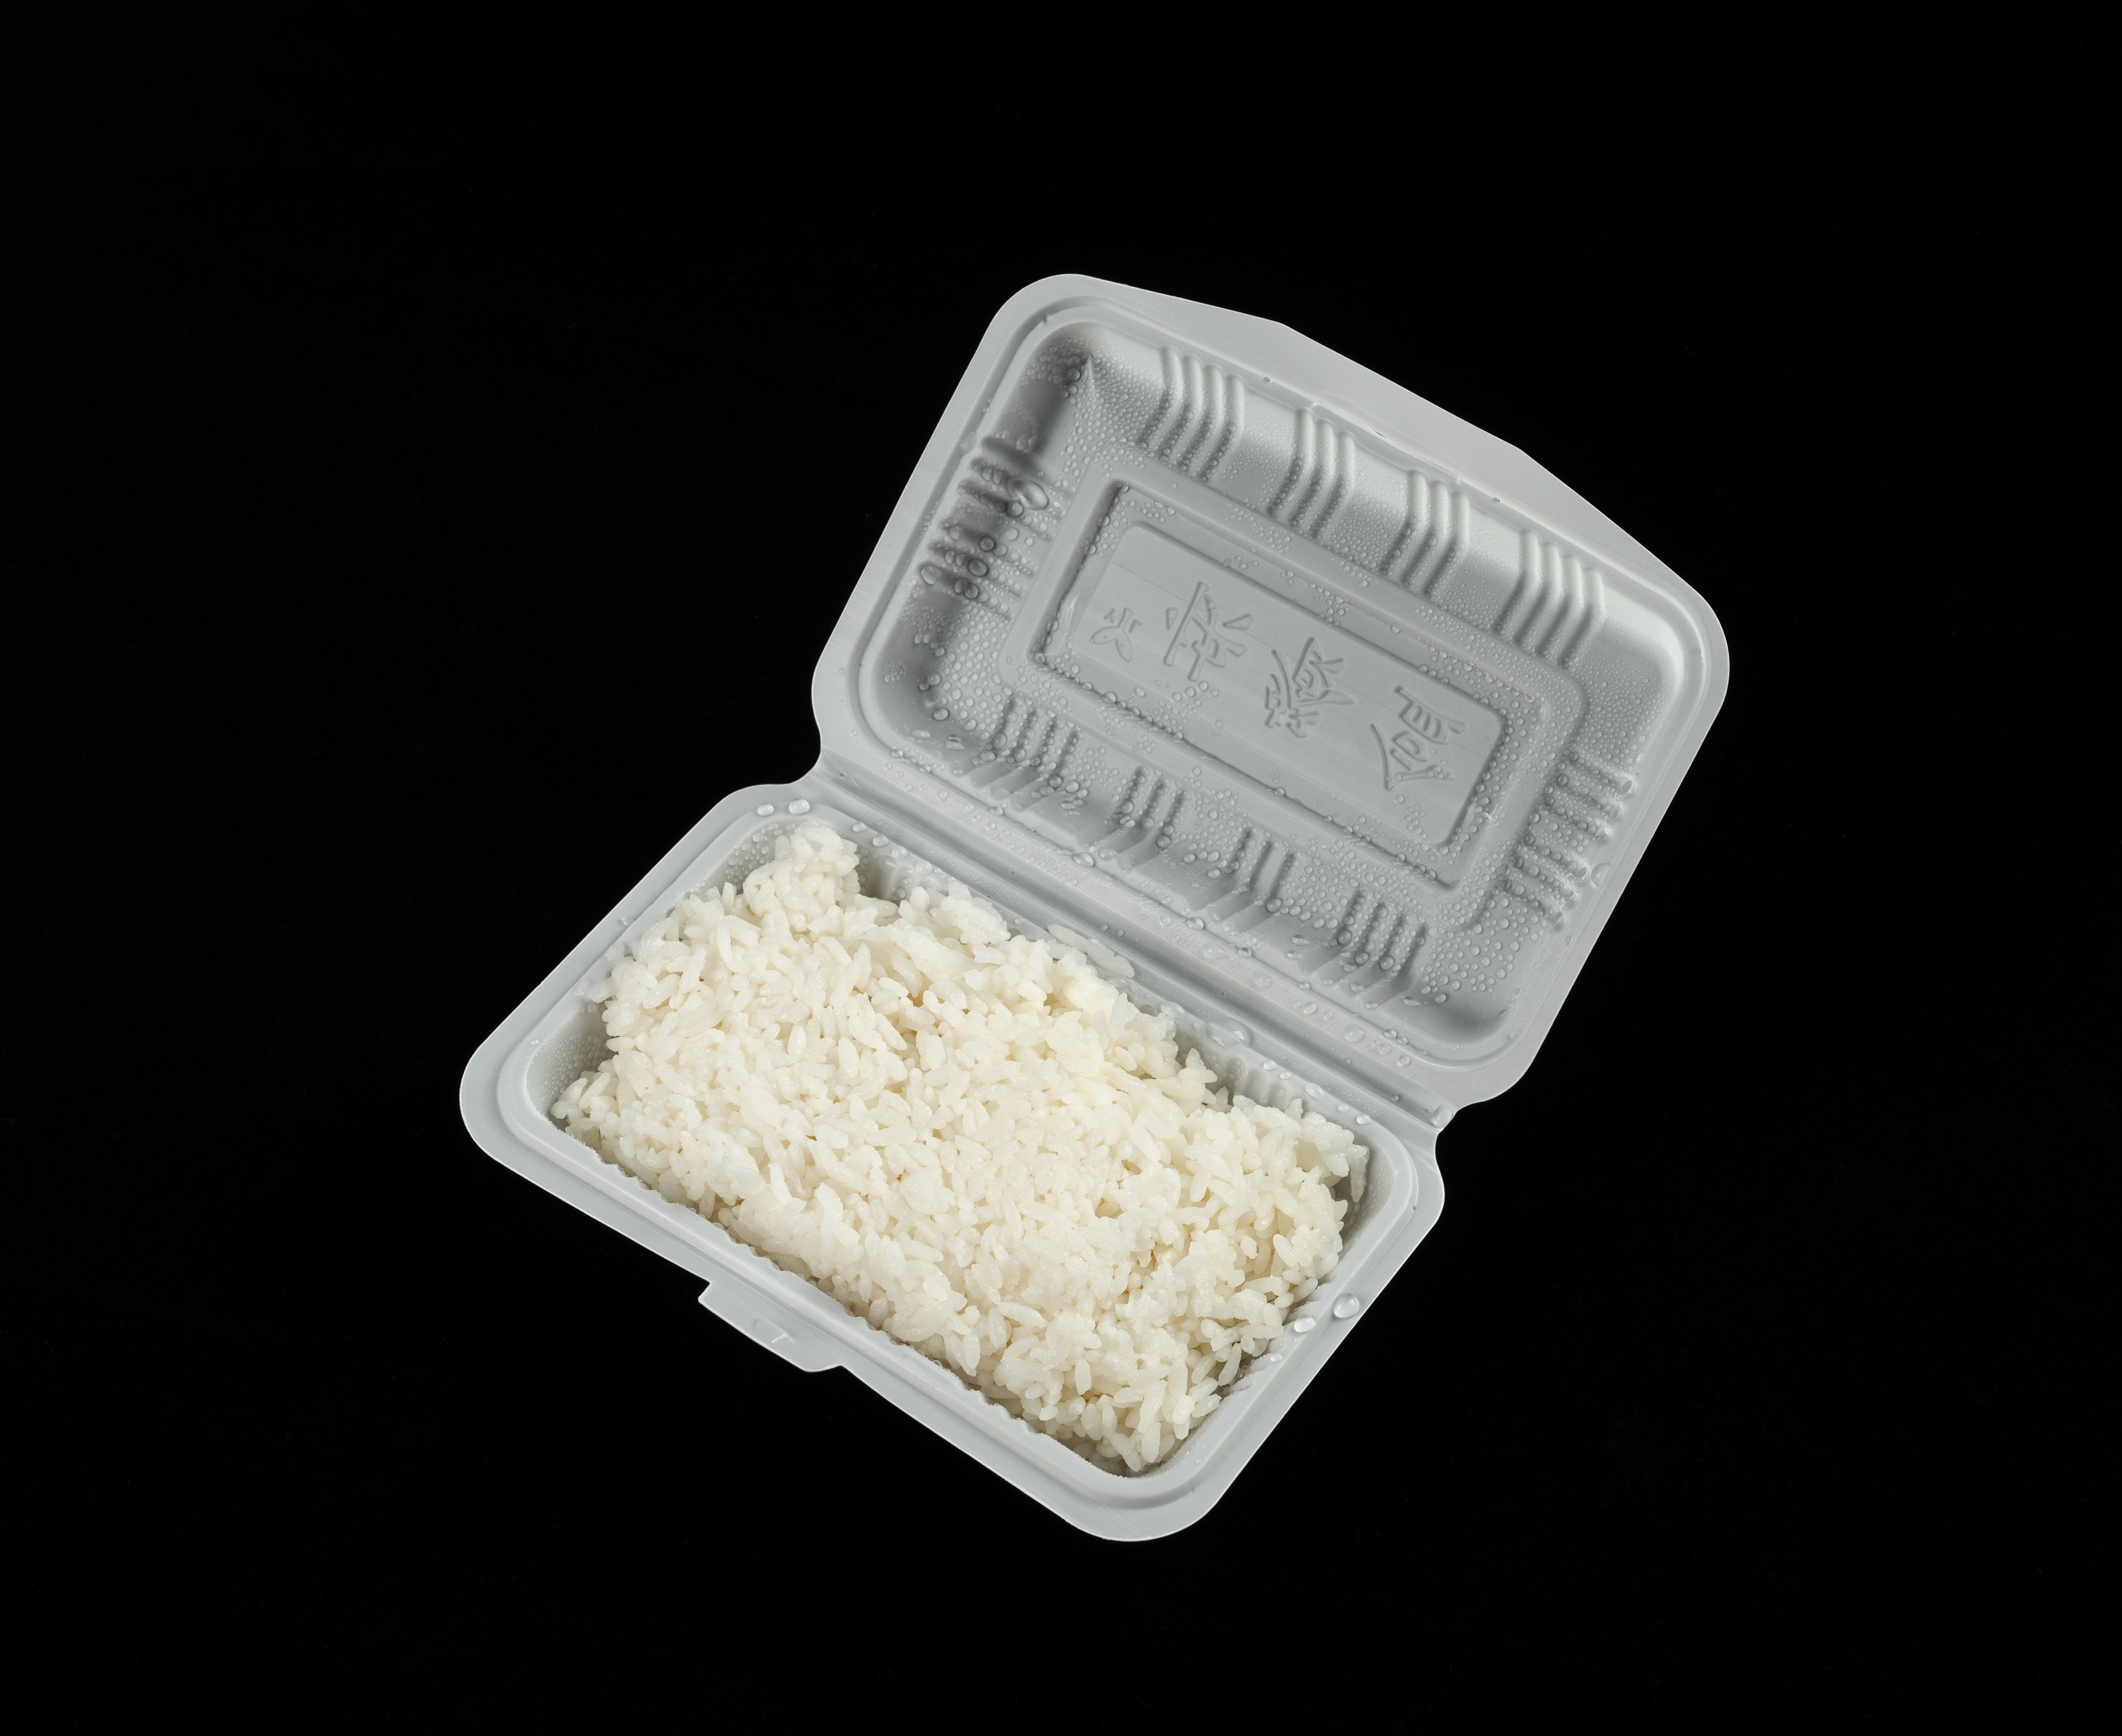 Beaucoup d'entre nous gardent les restes de riz après un repas chinois, mais le conseil du NHS est de ne pas le manger s'il a été conservé au réfrigérateur plus d'une journée.